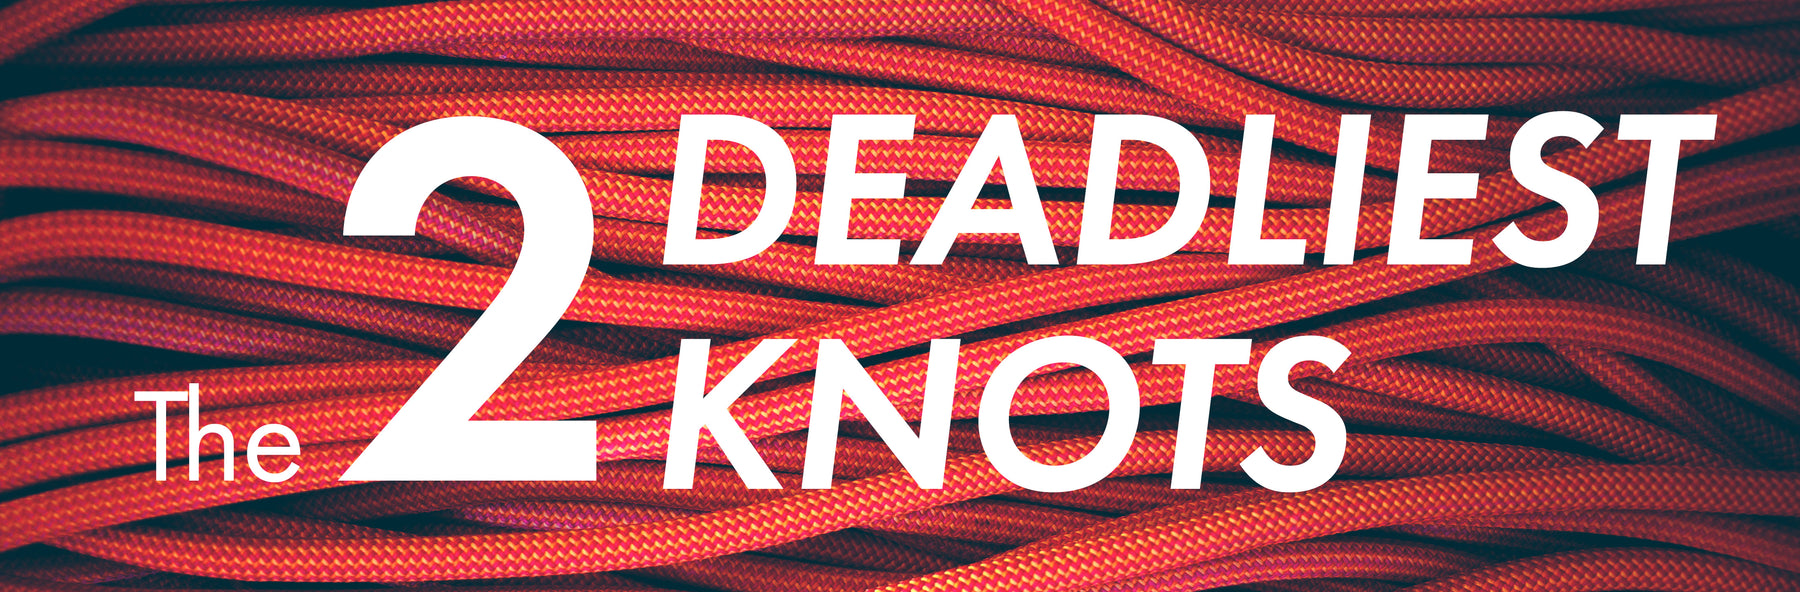 The 2 Deadliest Knots